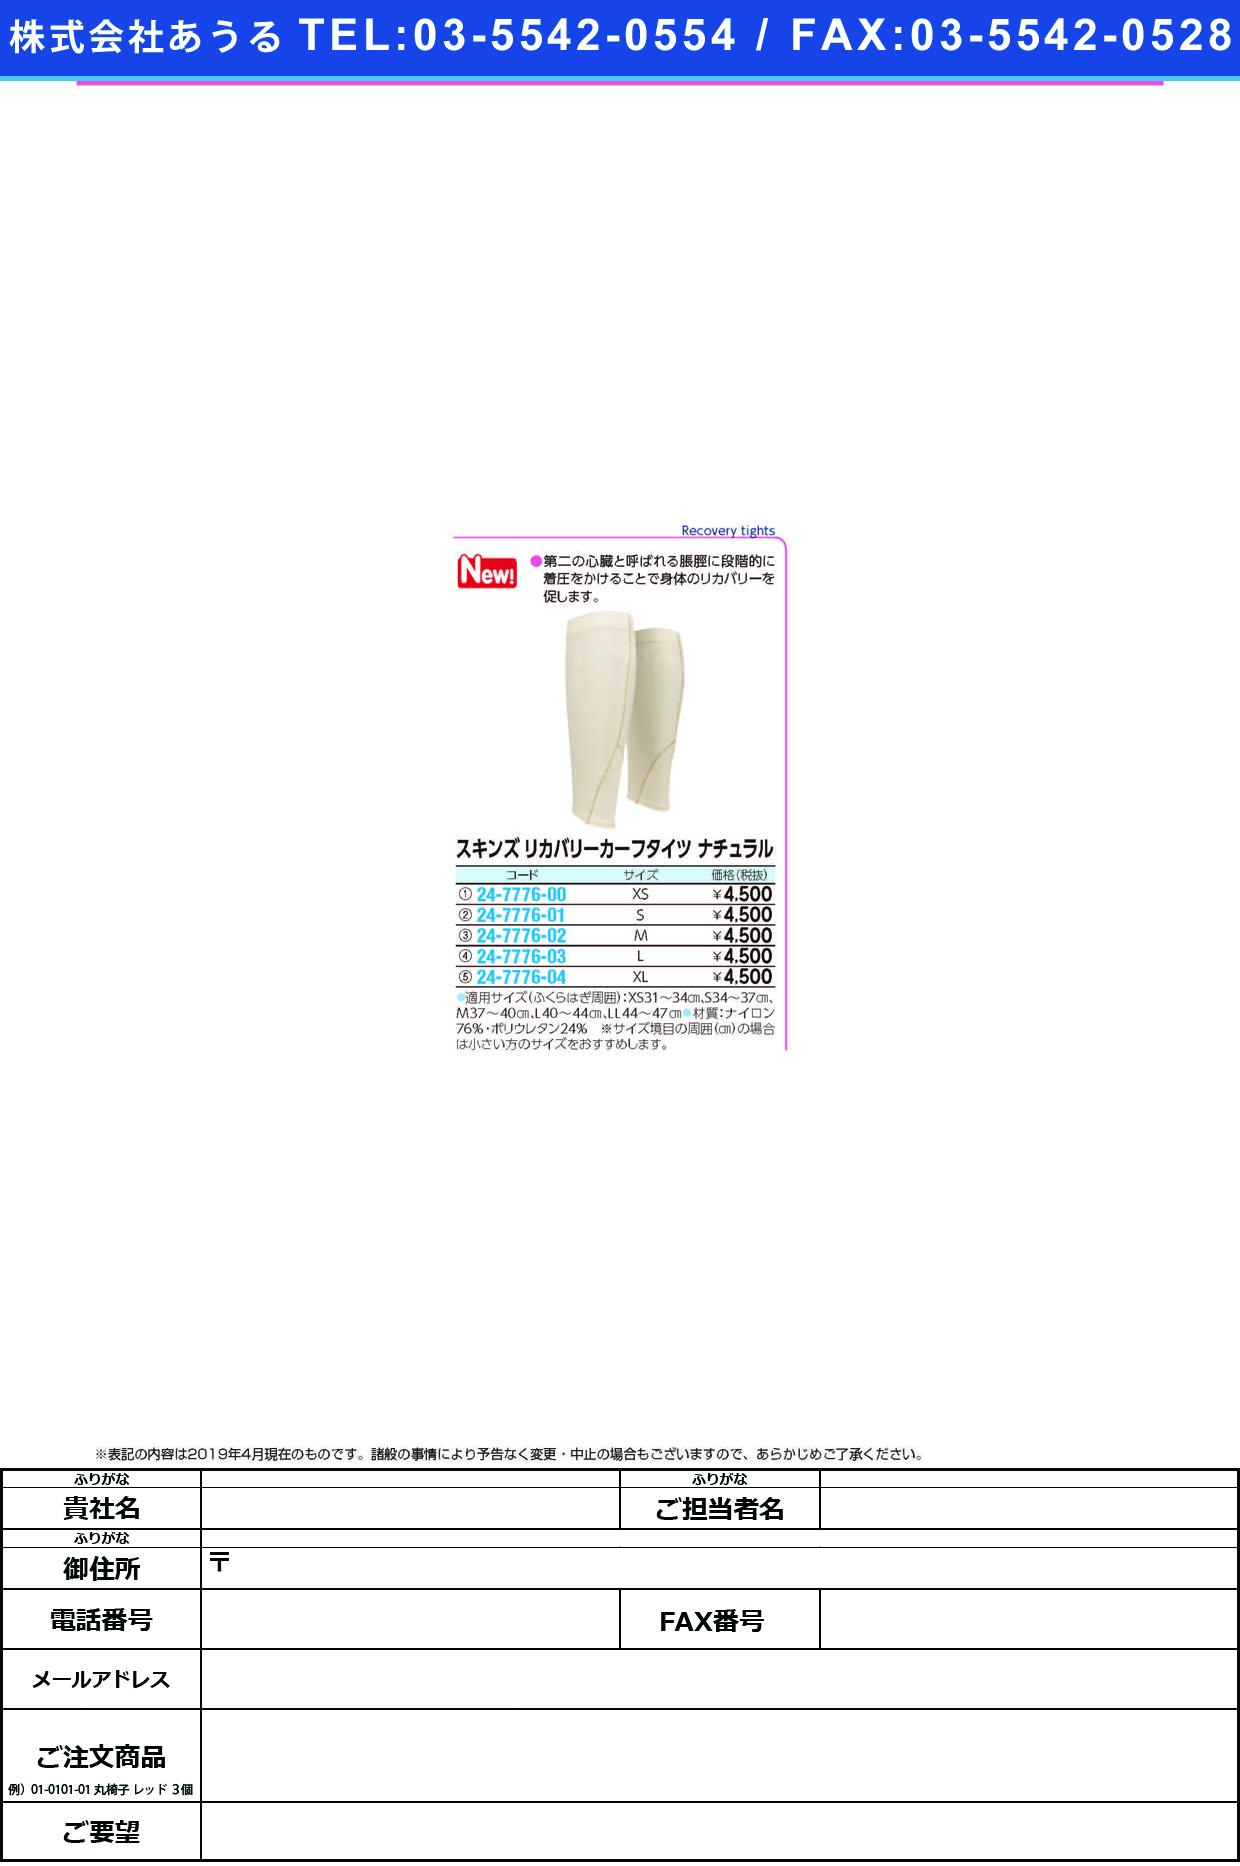 (24-7776-01)スキンズリカバリーカーフタイツS(ﾅﾁｭﾗﾙ) ｽｷﾝｽﾞﾘｶﾊﾞﾘｰｶｰﾌﾀｲﾂ(デサント)【1足単位】【2019年カタログ商品】